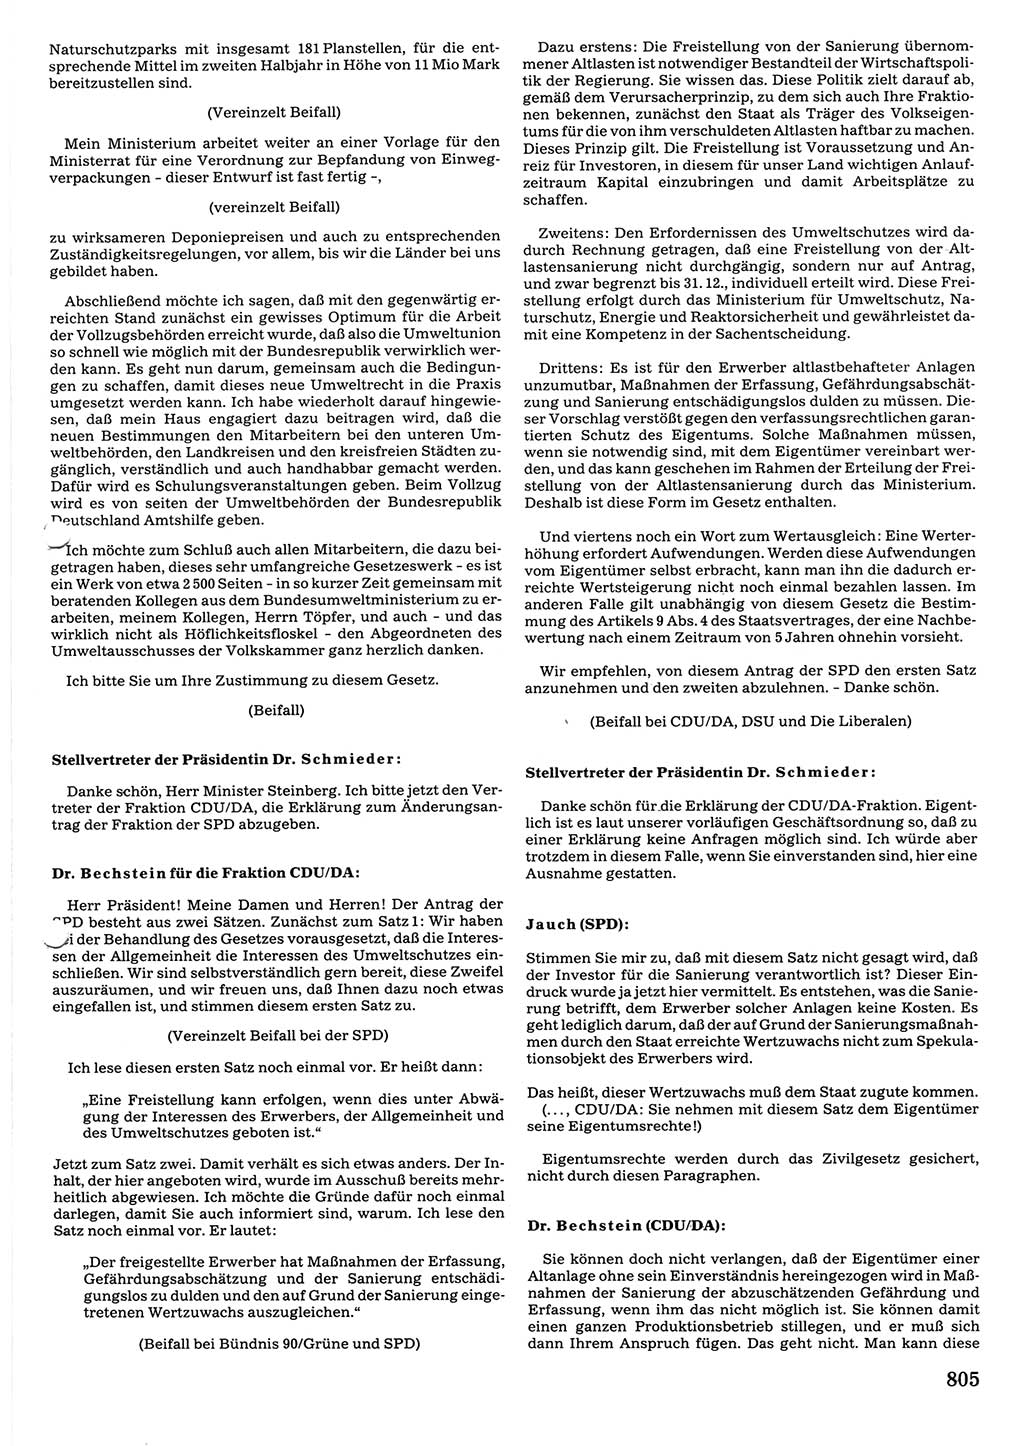 Tagungen der Volkskammer (VK) der Deutschen Demokratischen Republik (DDR), 10. Wahlperiode 1990, Seite 805 (VK. DDR 10. WP. 1990, Prot. Tg. 1-38, 5.4.-2.10.1990, S. 805)